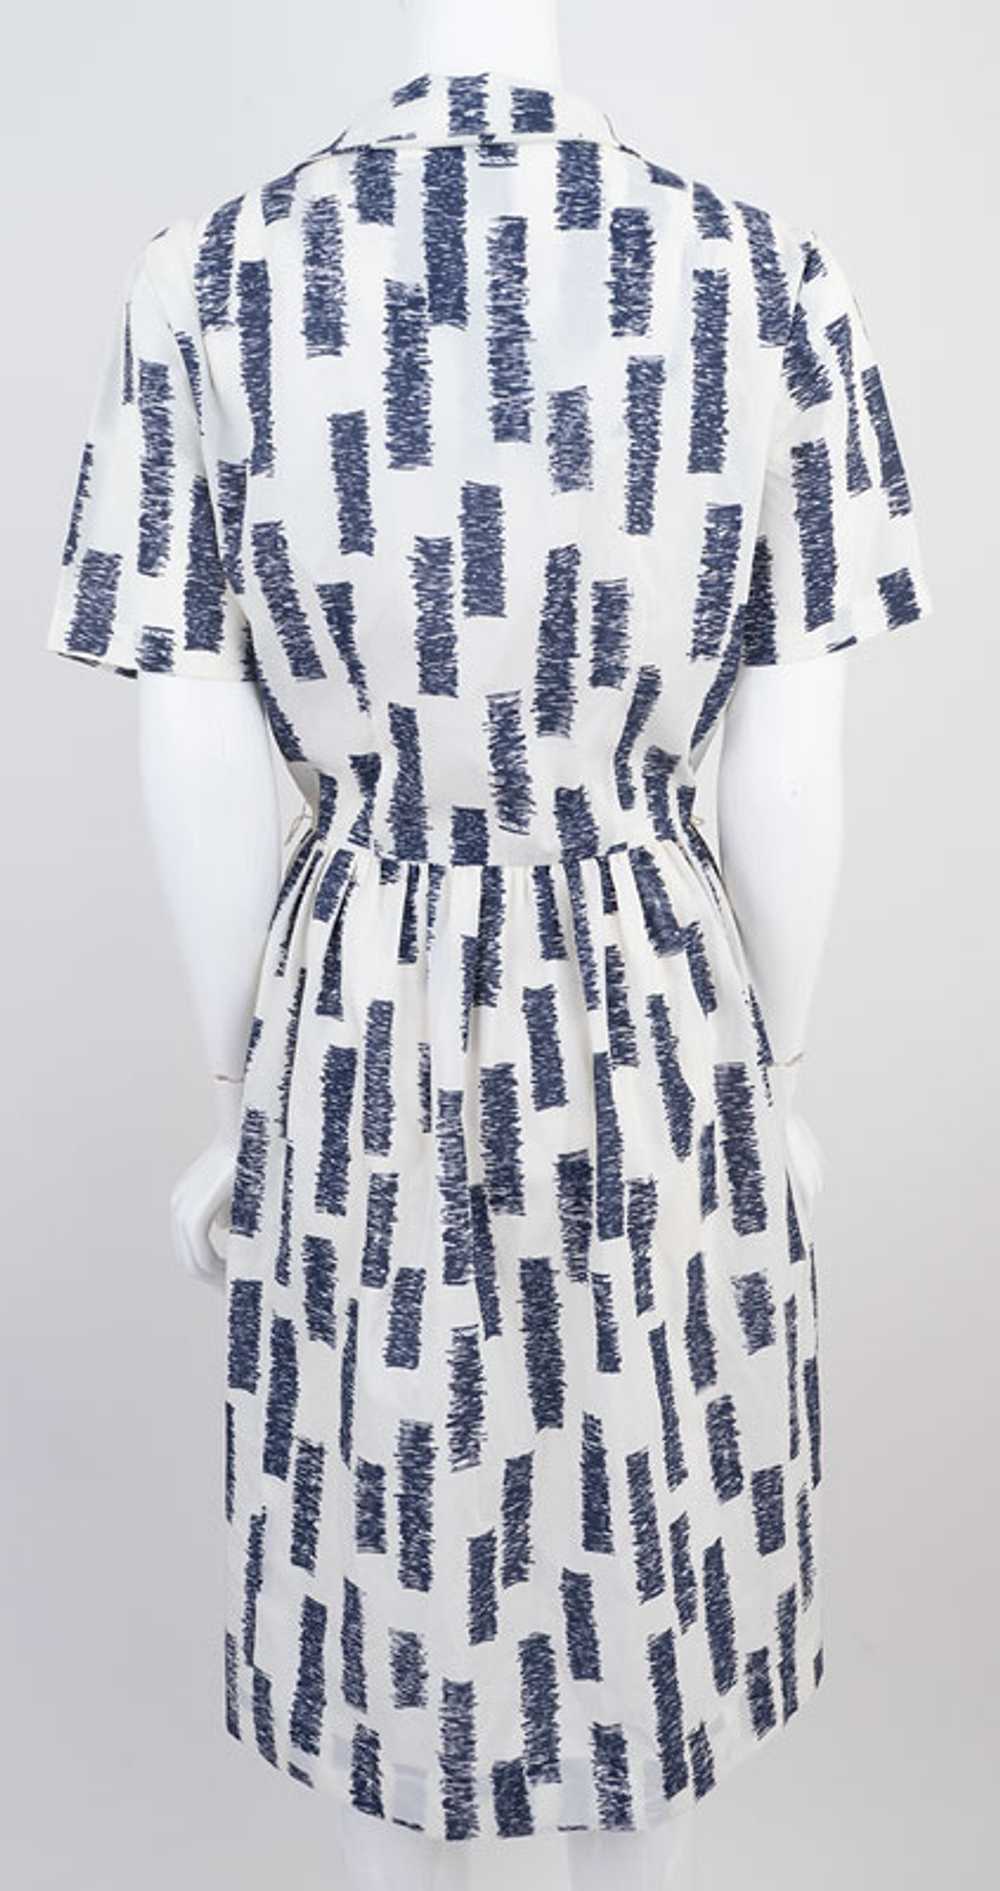 Mod Print 1960s Dress - image 4